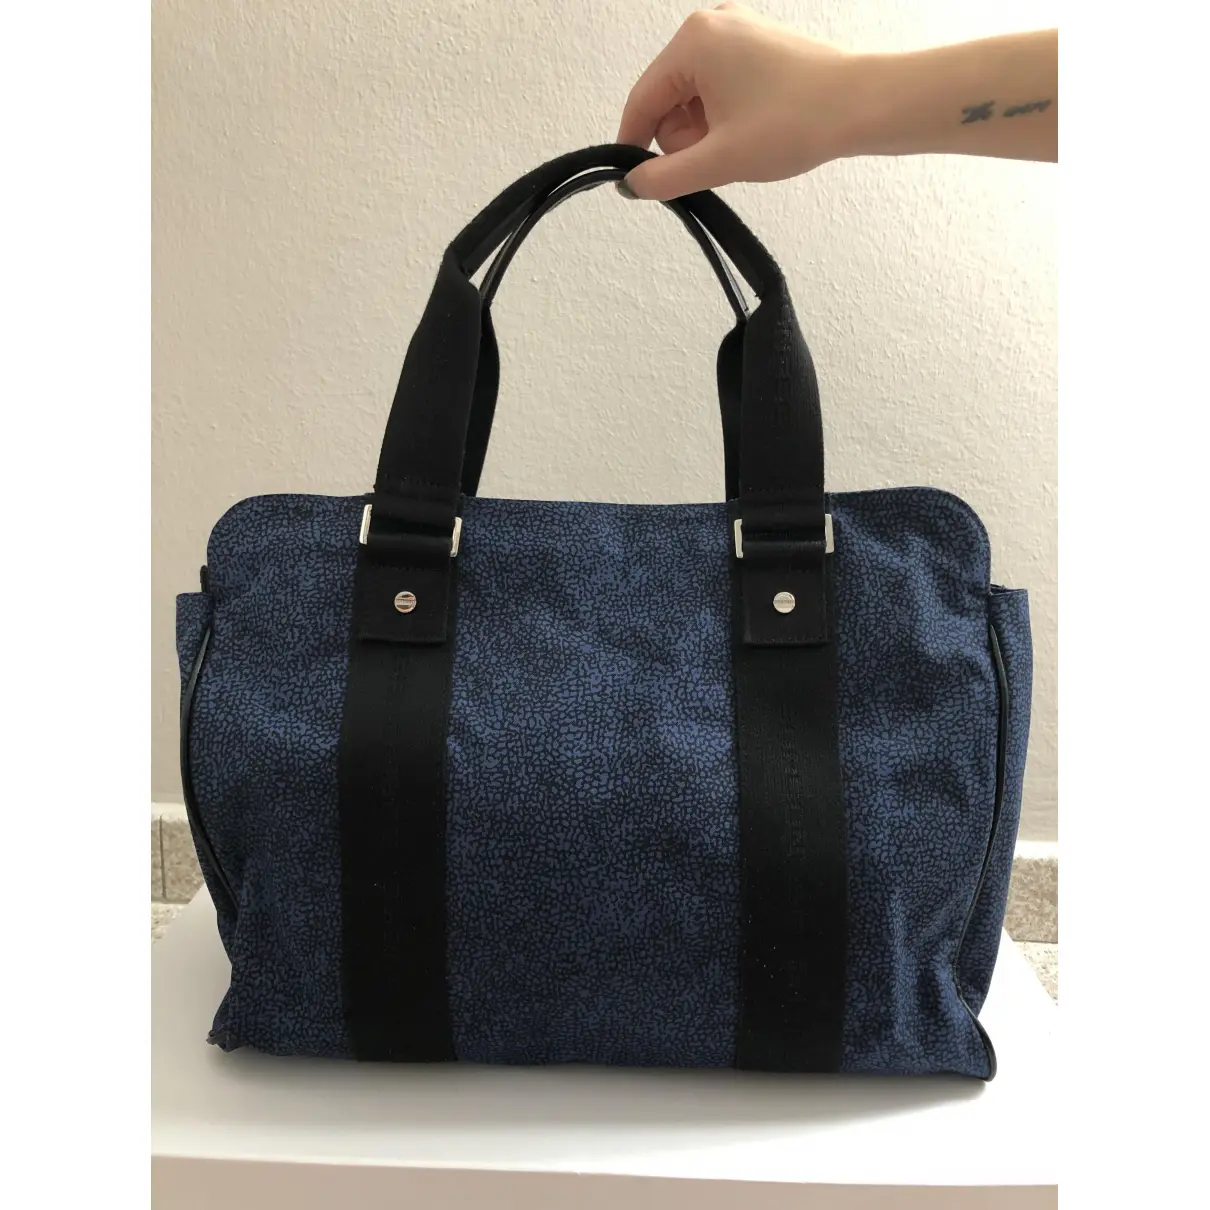 Buy BORBONESE Cloth handbag online